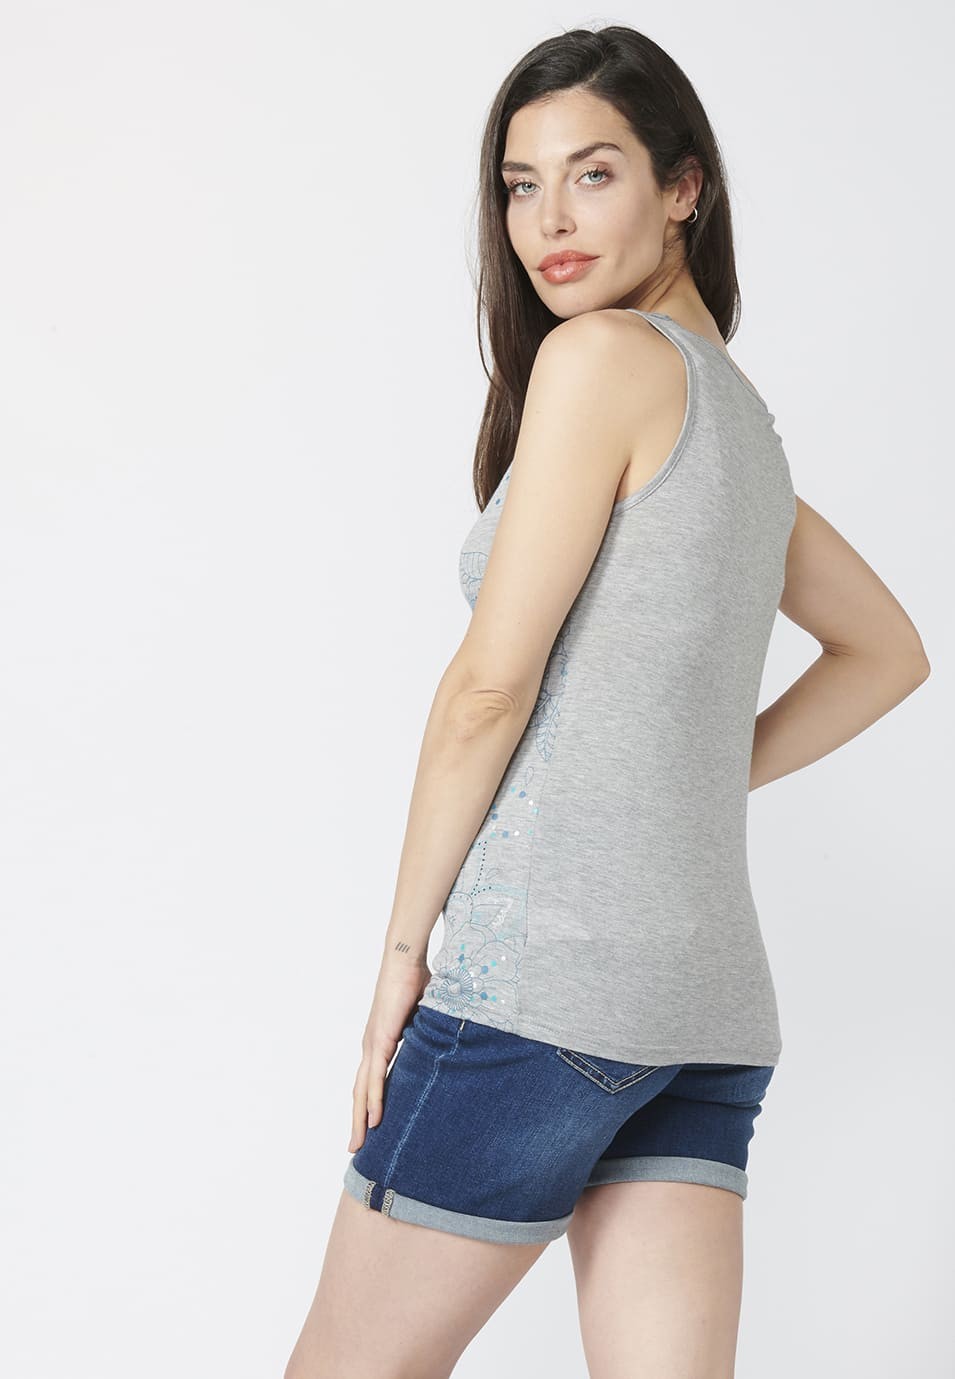 Camiseta Top tirantes con Escote Holgado y Estampado Étnico Floral para Mujer color Gris 4